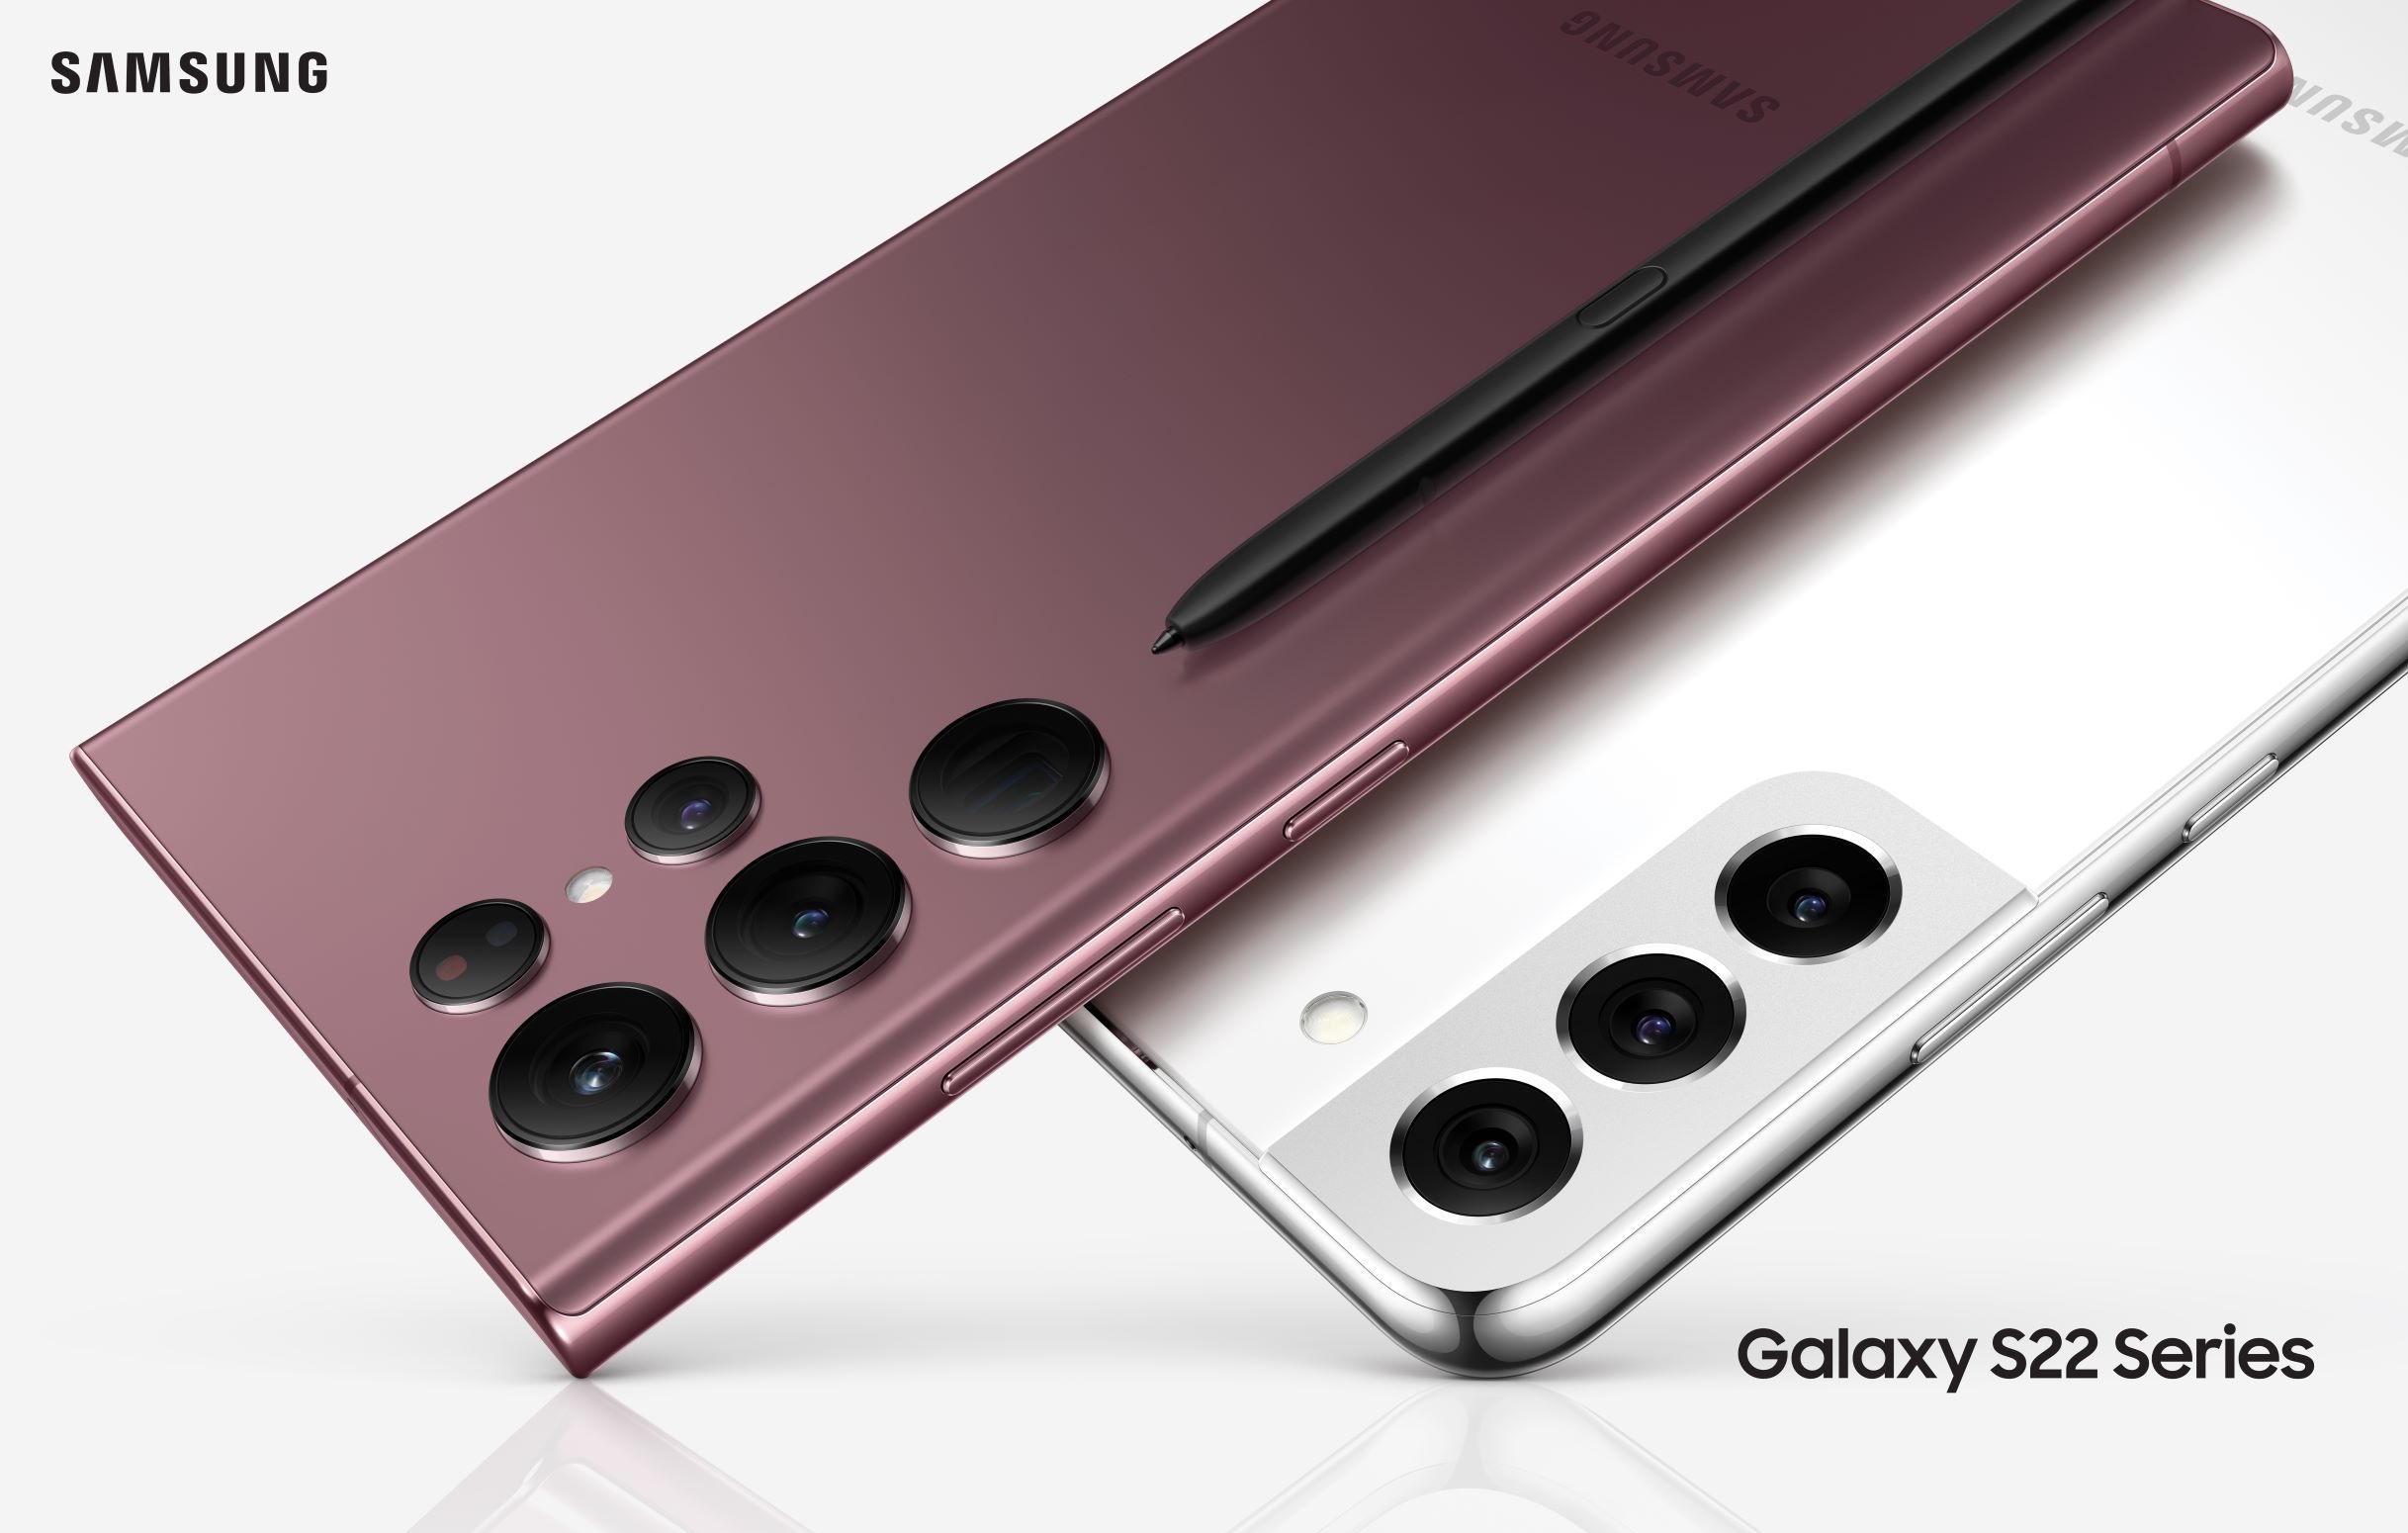 Las versiones Qualcomm del Galaxy S22, Galaxy S22+ y Galaxy S22 Ultra han empezado a recibir One UI 5.1